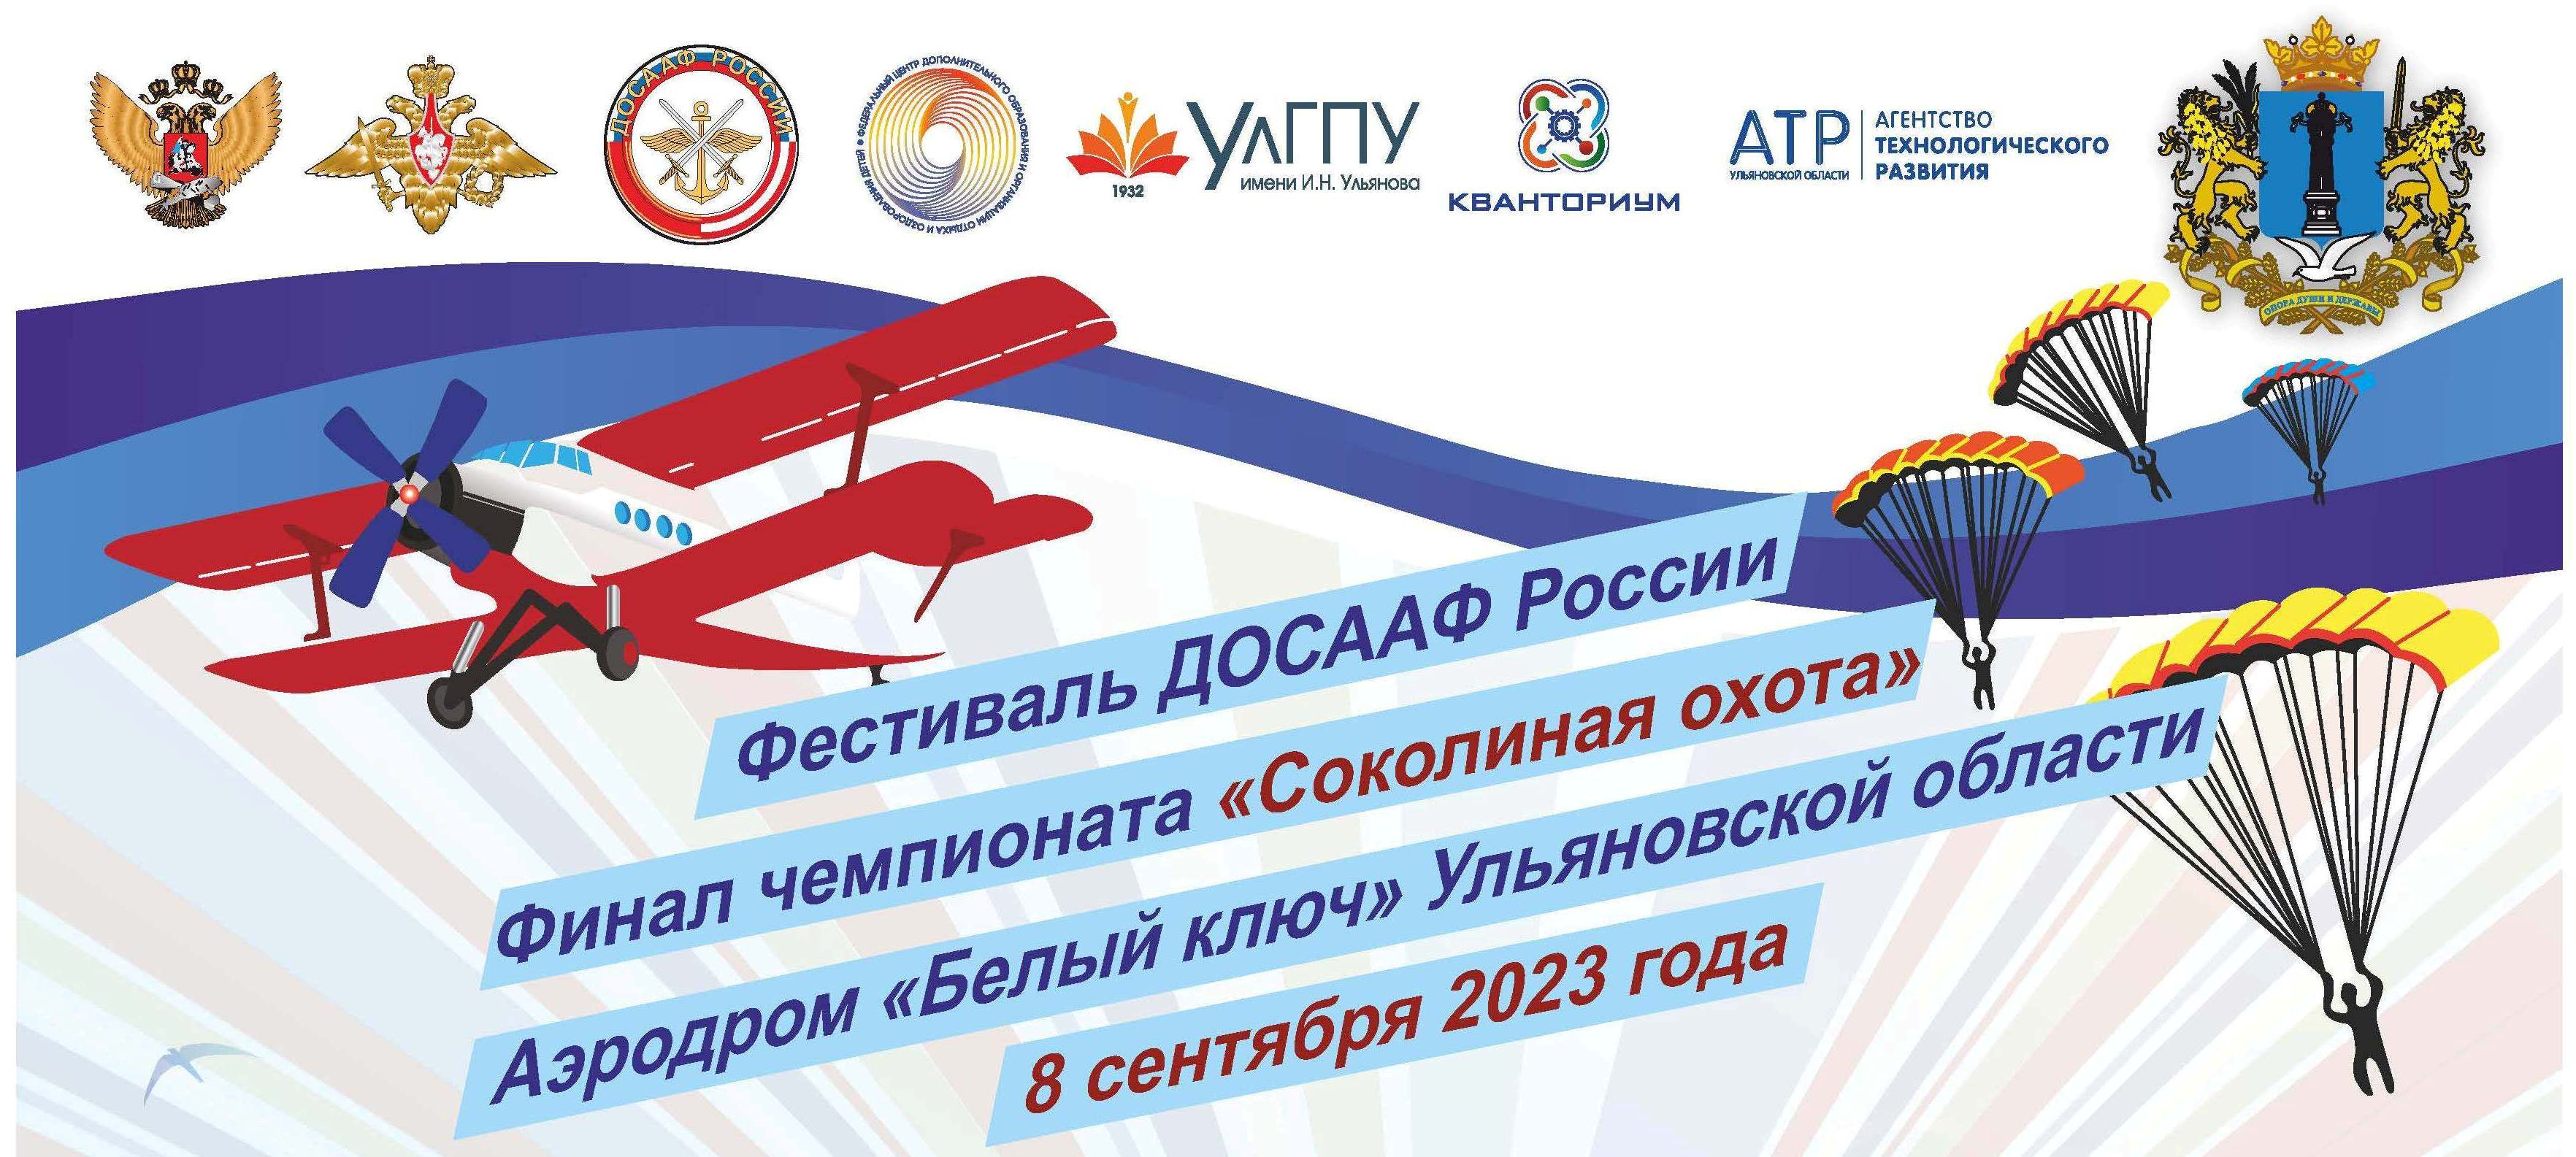 В Ульяновске впервые проходит военно-патриотический фестиваль ДОСААФ России